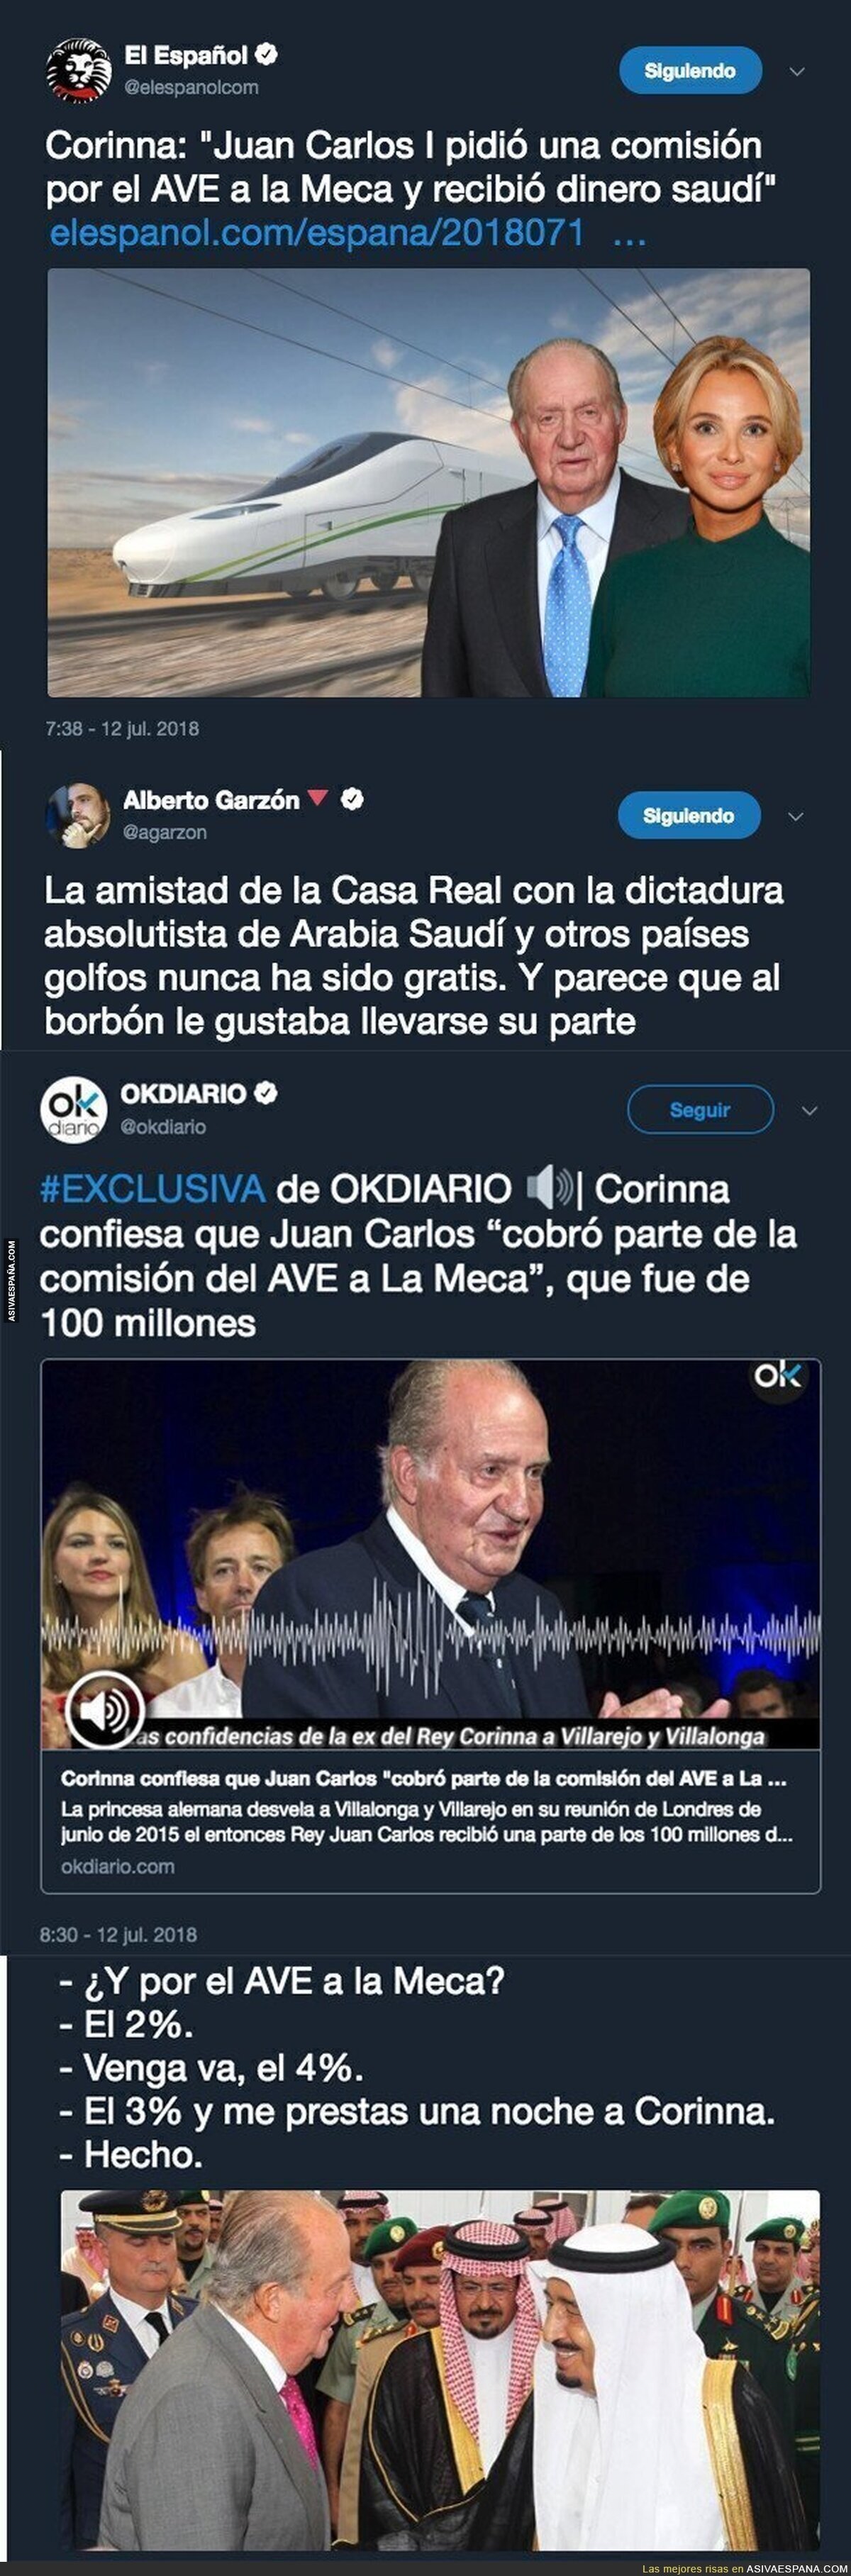 El gran escándalo del Rey Juan Carlos y las comisiones desveladas por su ex-novia Corinna